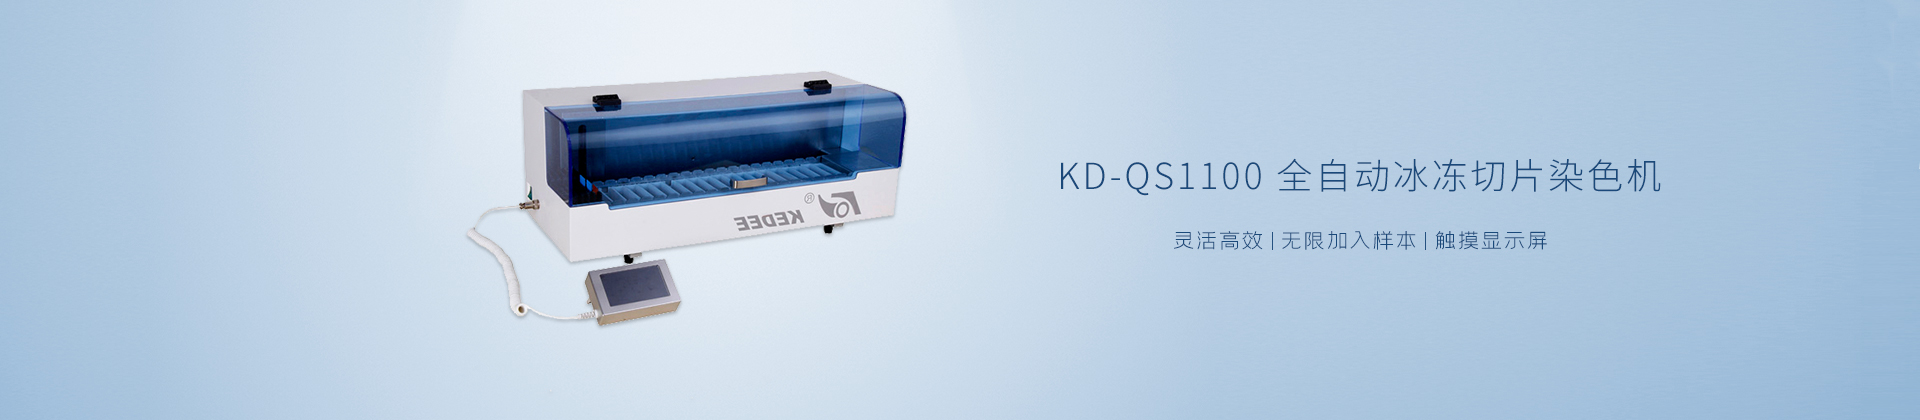 KD-QS1100 全自动冰冻切片染色机